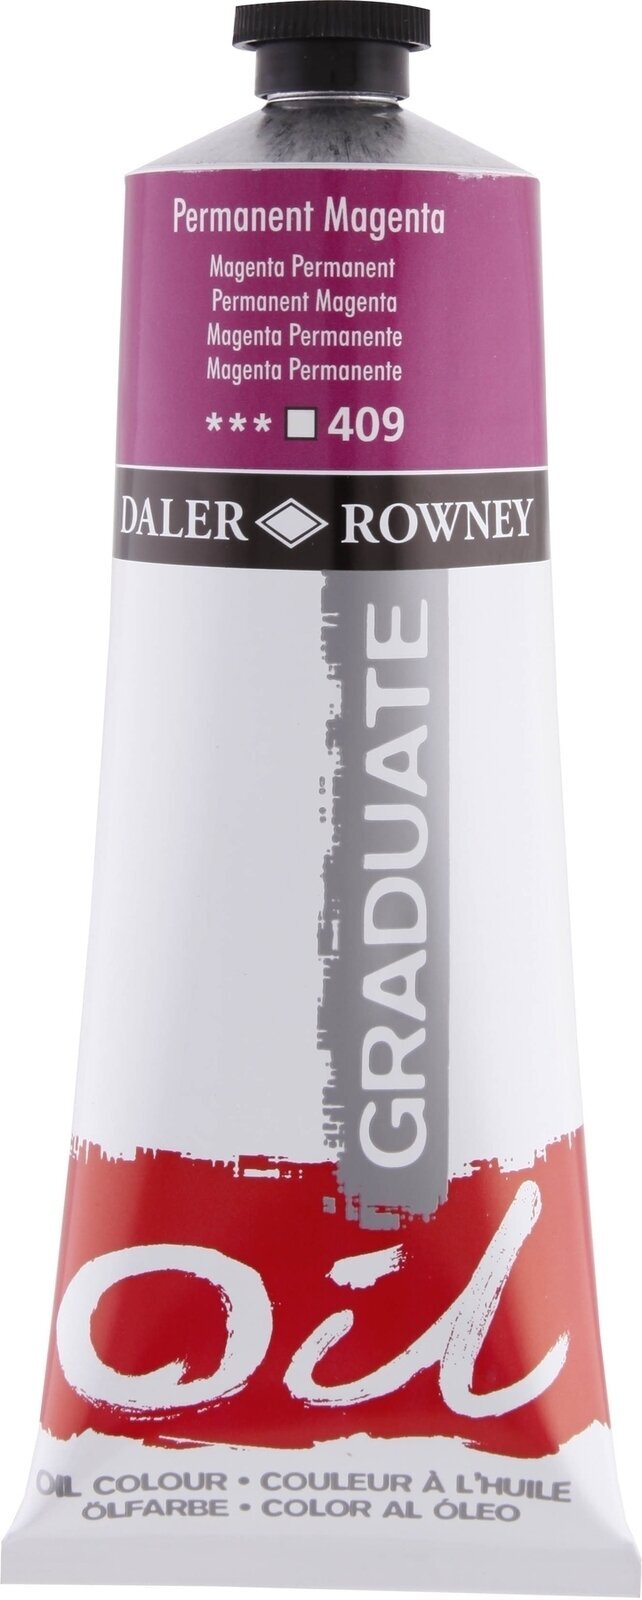 Aceite de colores Daler Rowney Graduate Oil Paint Permanent Magenta 200 ml 1 pc